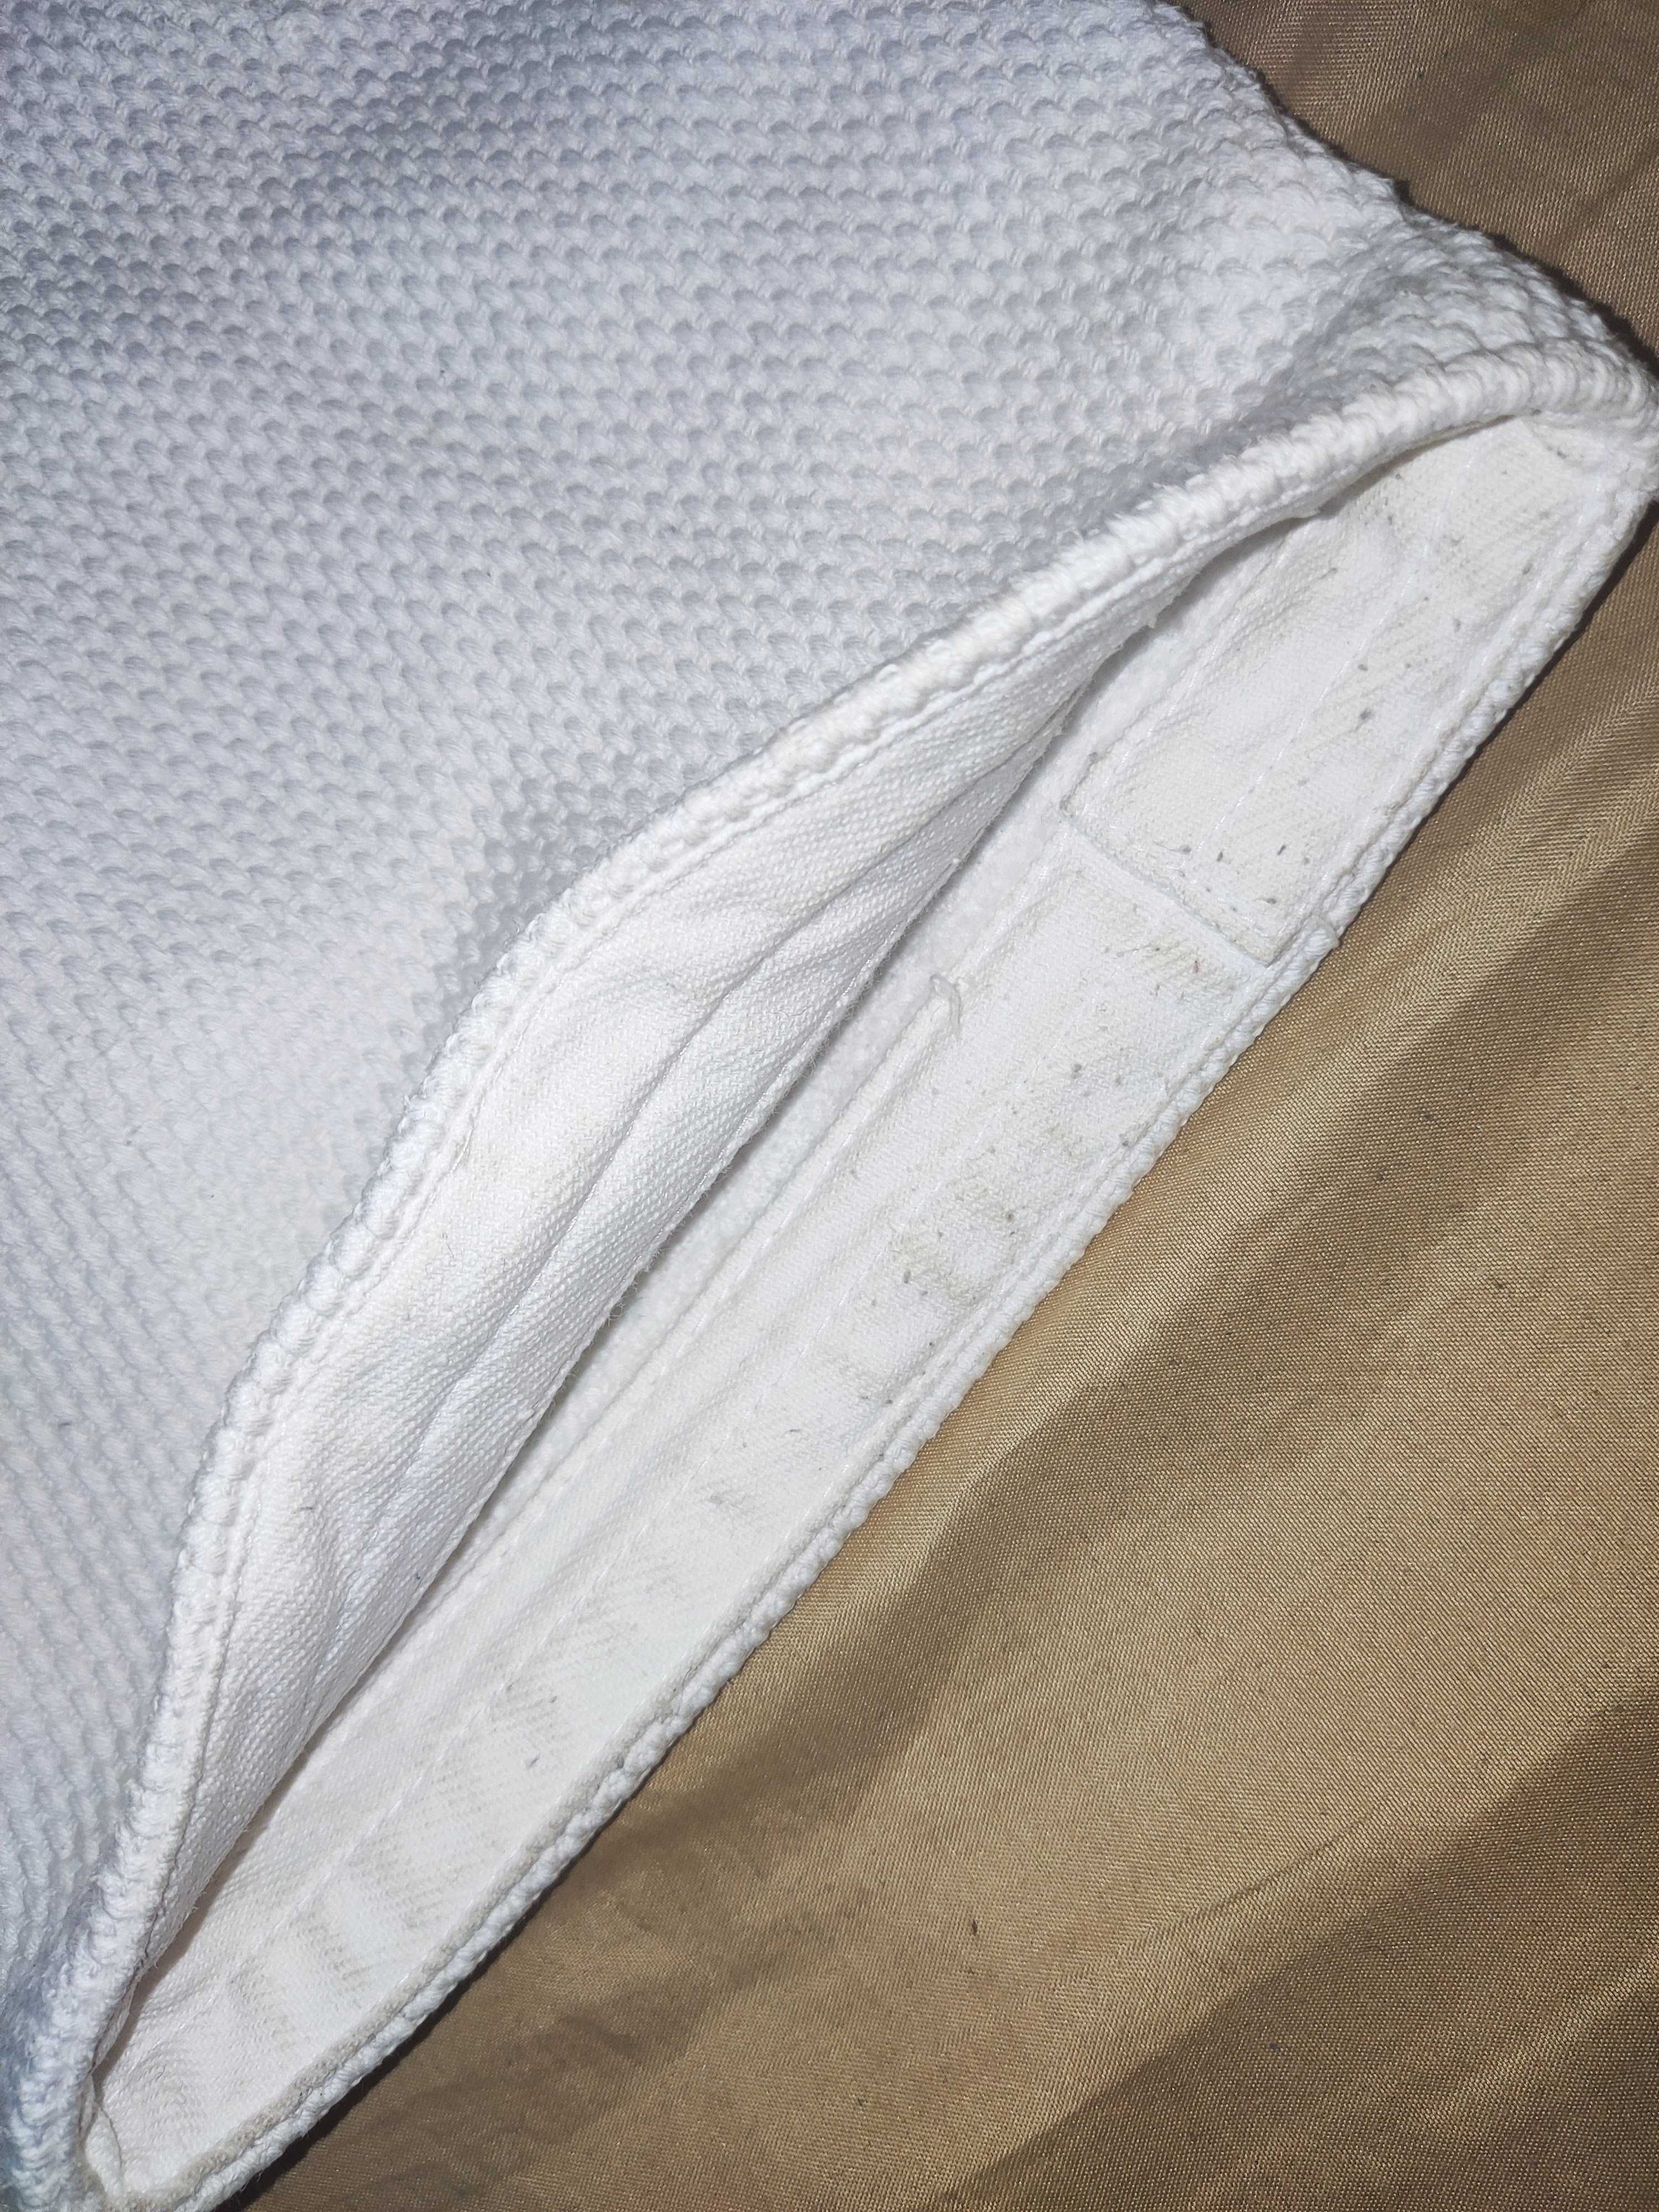 Кімоно для дзюдо, джіу-джитсу, айкідо Matsa 800 г/м2 у білому кольорі